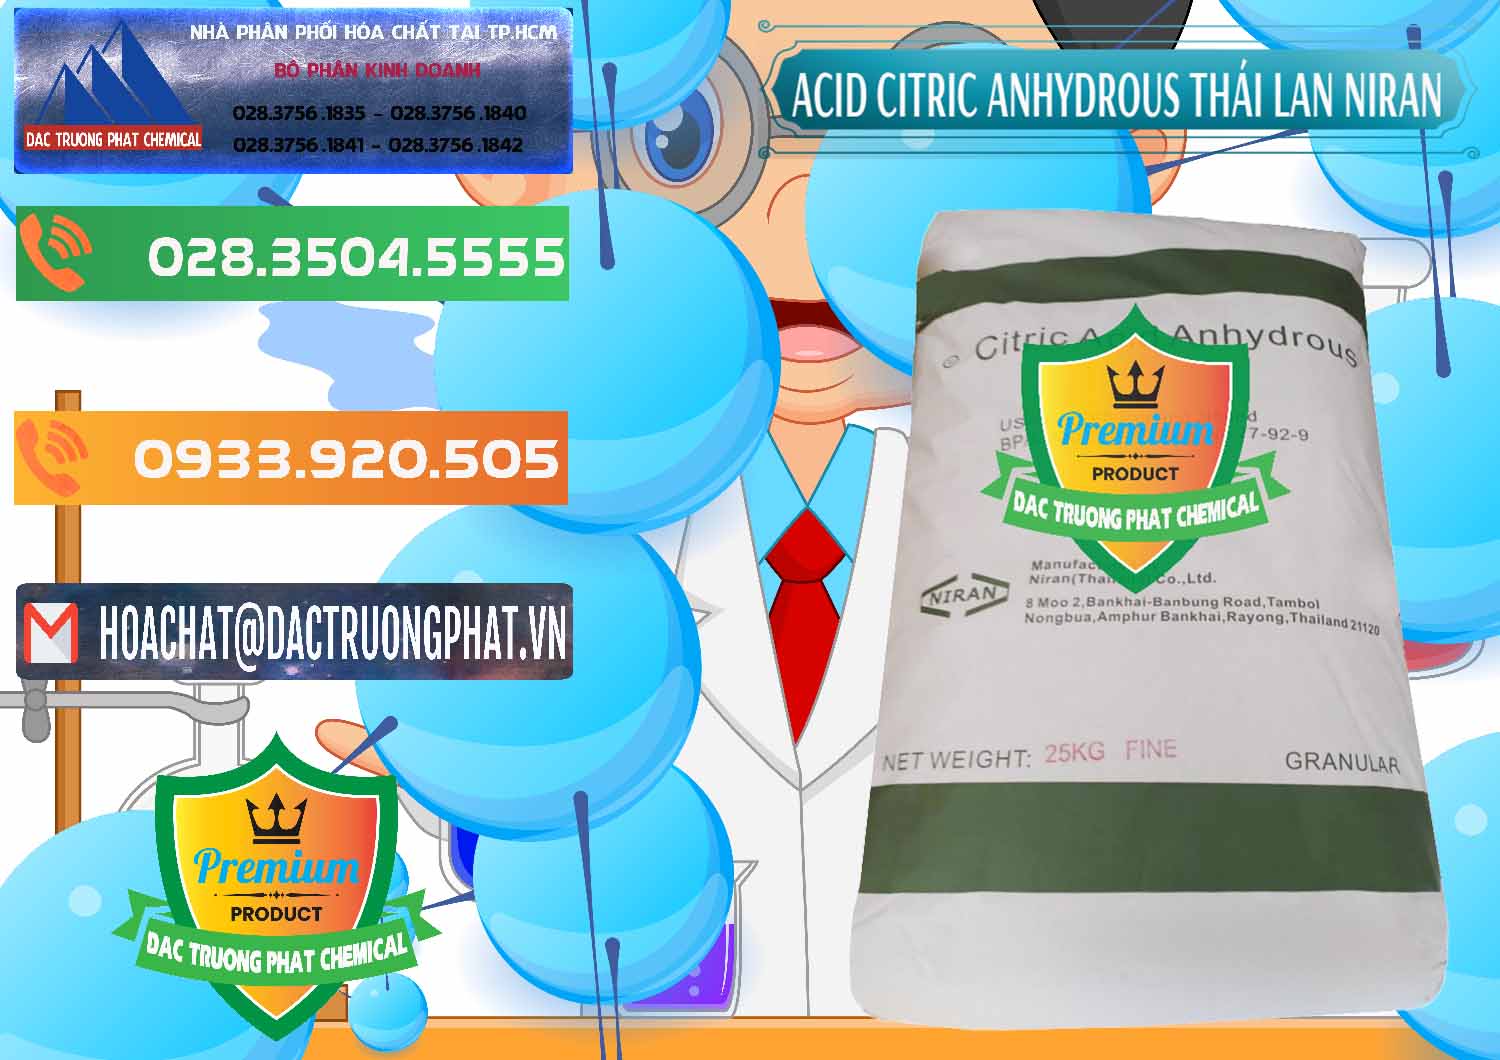 Chuyên bán ( cung cấp ) Acid Citric - Axit Citric Anhydrous - Thái Lan Niran - 0231 - Cty bán ( cung cấp ) hóa chất tại TP.HCM - hoachatxulynuoc.com.vn